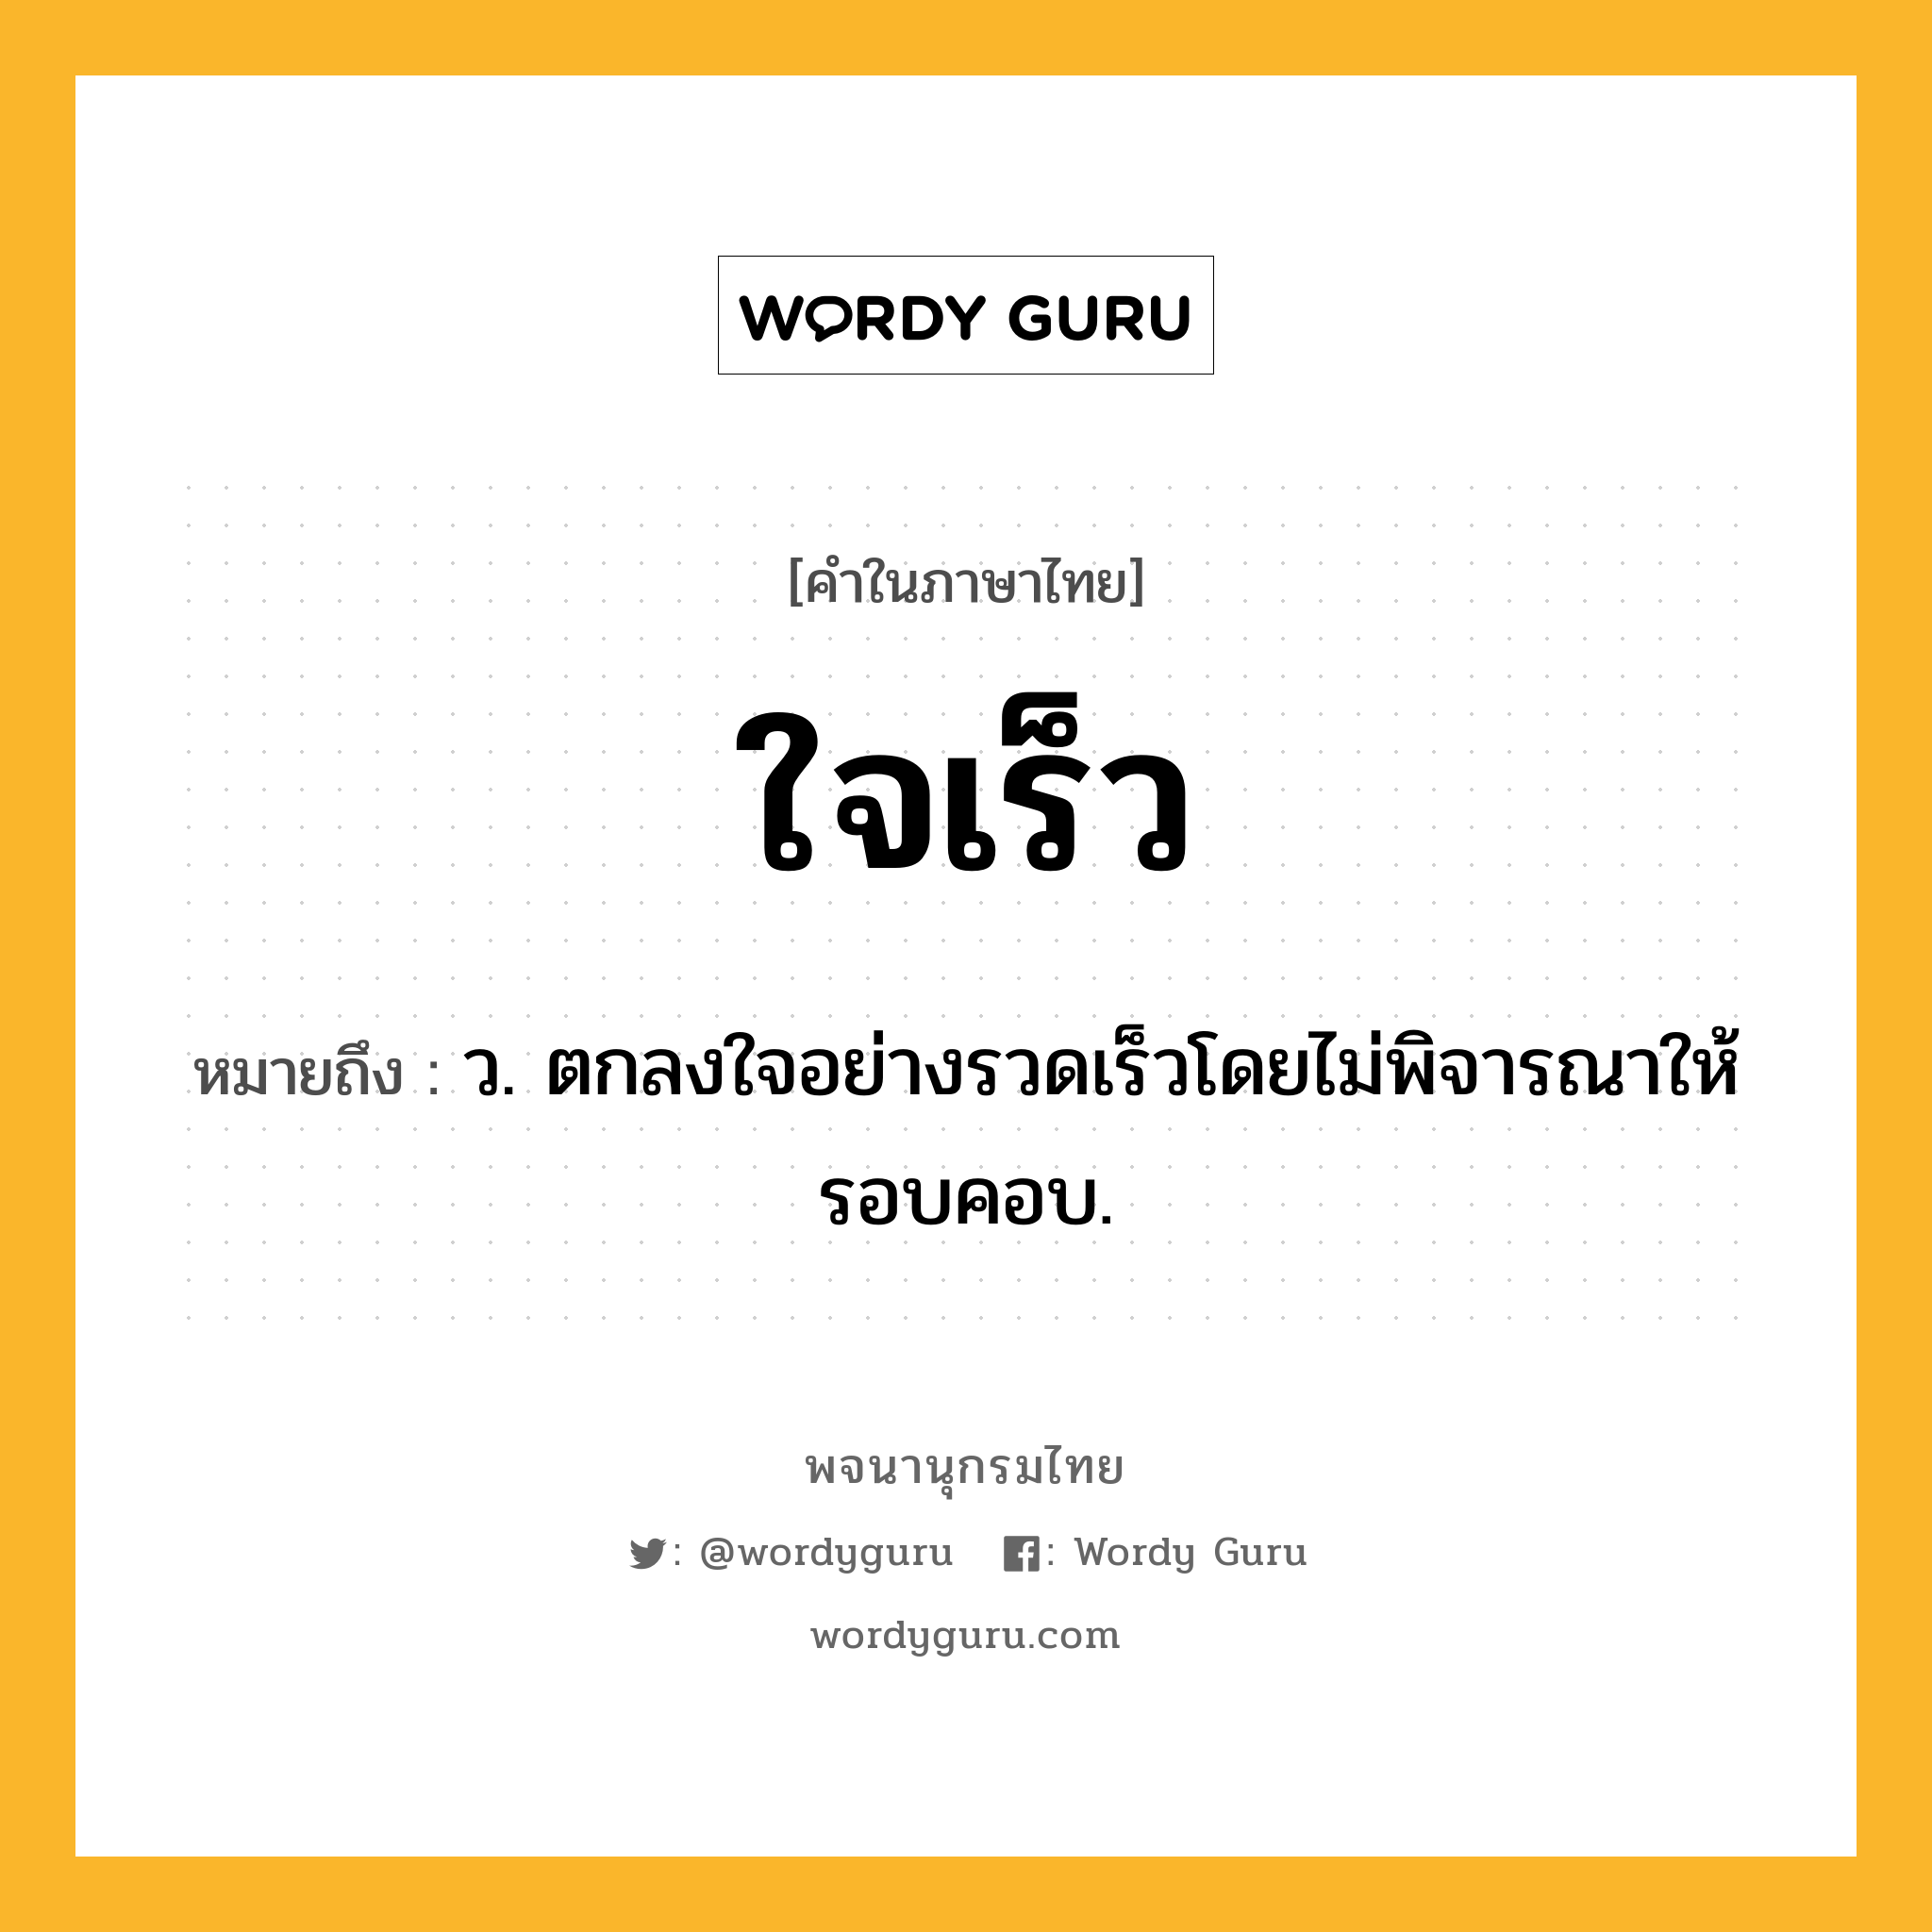 ใจเร็ว หมายถึงอะไร?, คำในภาษาไทย ใจเร็ว หมายถึง ว. ตกลงใจอย่างรวดเร็วโดยไม่พิจารณาให้รอบคอบ.